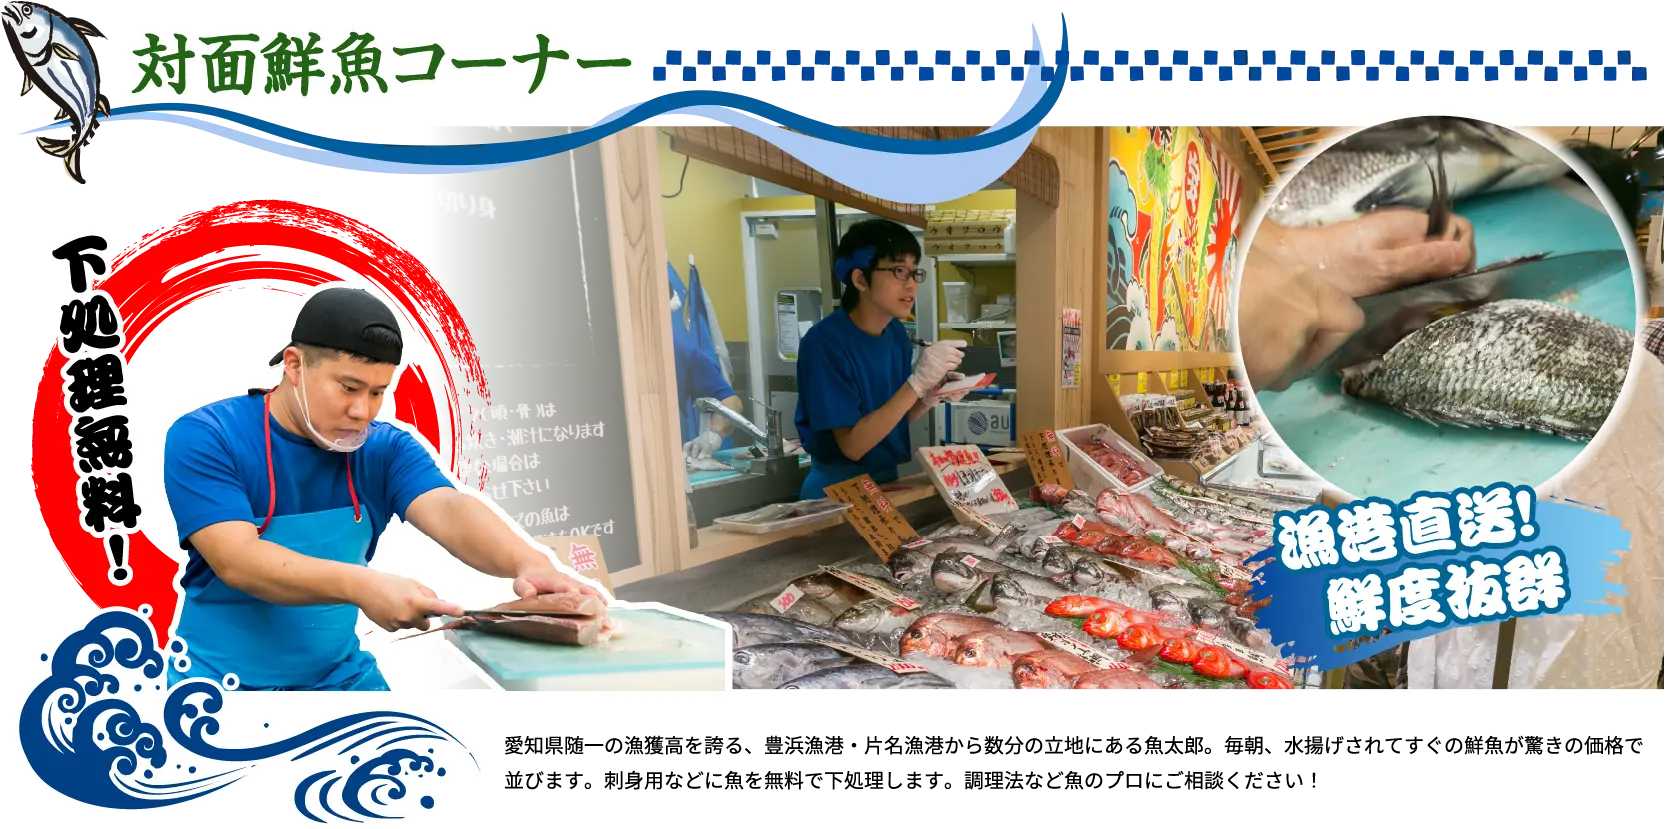 対面鮮魚コーナー 下処理無料！ 愛知県随一の漁獲高を誇る、豊浜漁港・片名漁港から数分の立地にある魚太郎。毎朝、水揚げされてすぐの鮮魚が驚きの価格で並びます。刺身用などに魚を無料で下処理します。調理法など魚のプロにご相談ください！